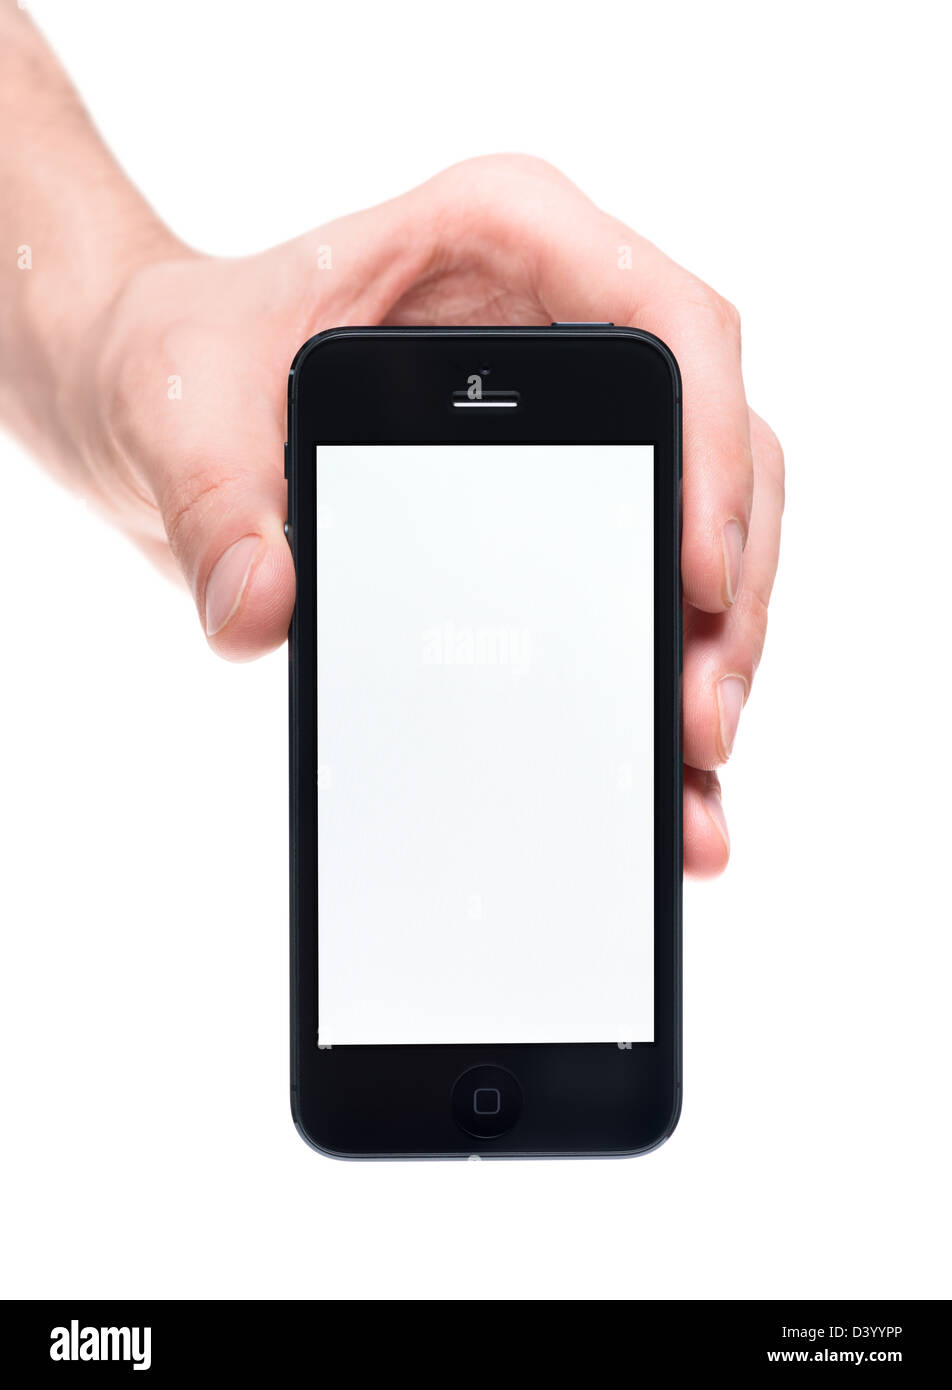 Hand holding iphone immagini e fotografie stock ad alta risoluzione - Alamy